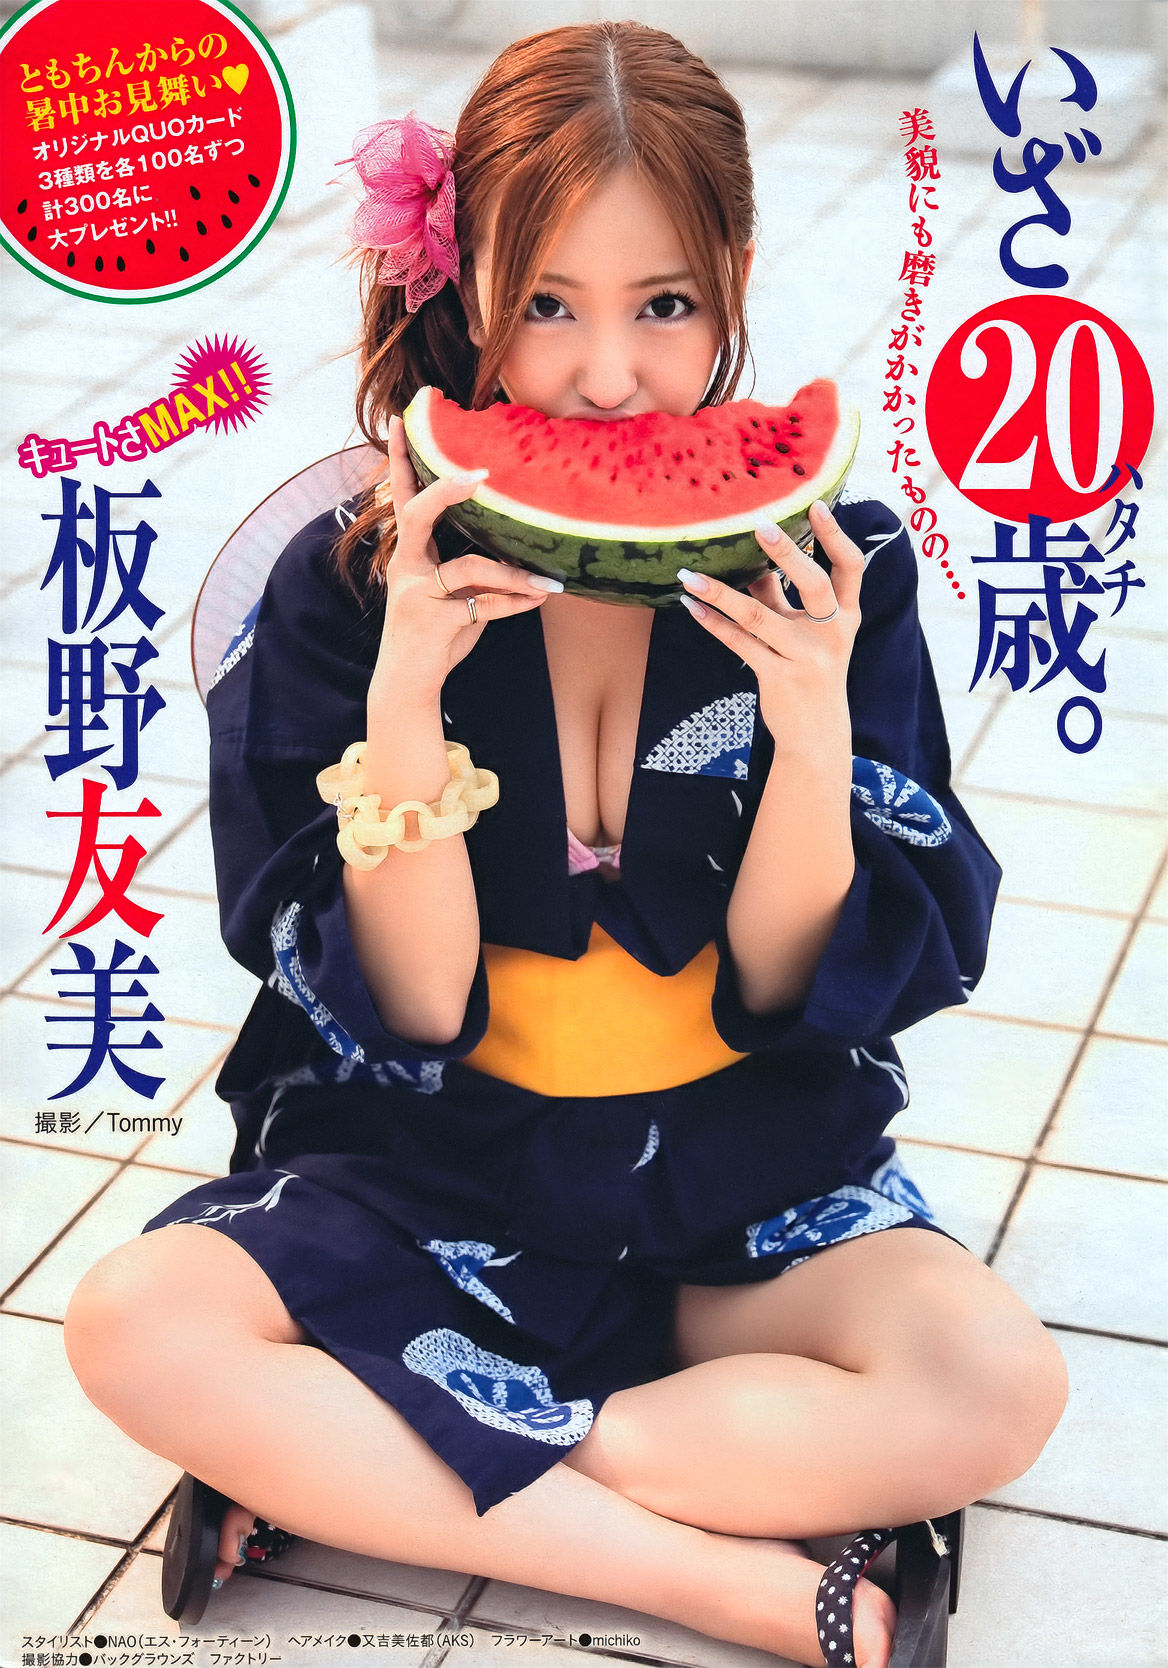 [Young Magazine]嫩模日本女星:板野友美(ともちん)无删减私房照片良心推荐(19P)